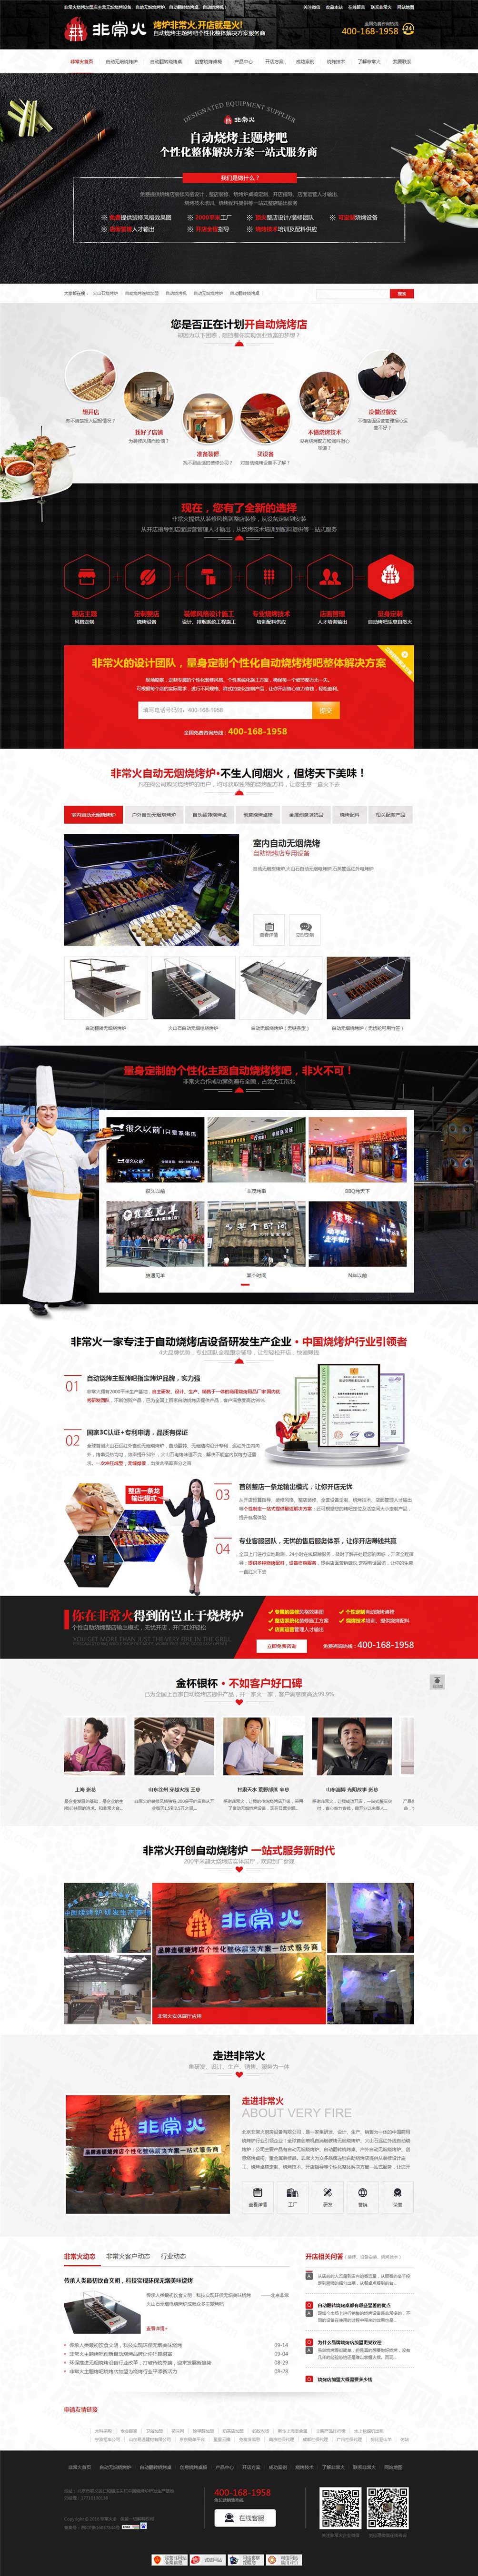 北京非常火自动烧烤炉设备营销型网站案例